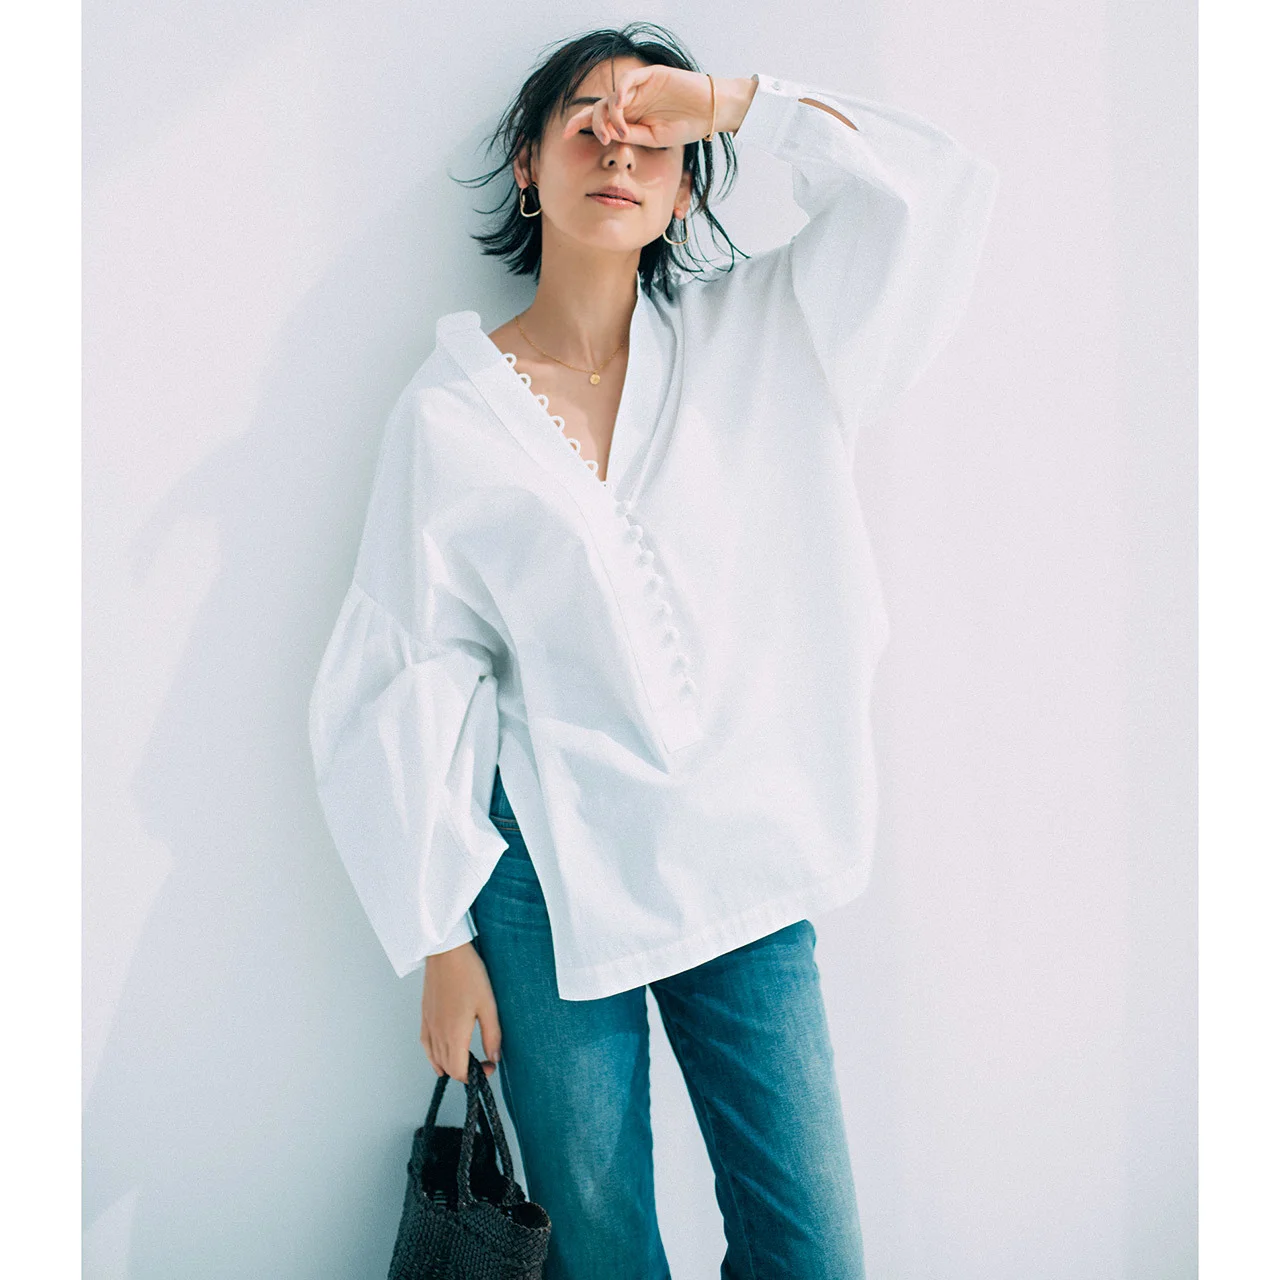 デザインのきいた白シャツ×デニムパンツコーデを着たモデルの小泉里子さん